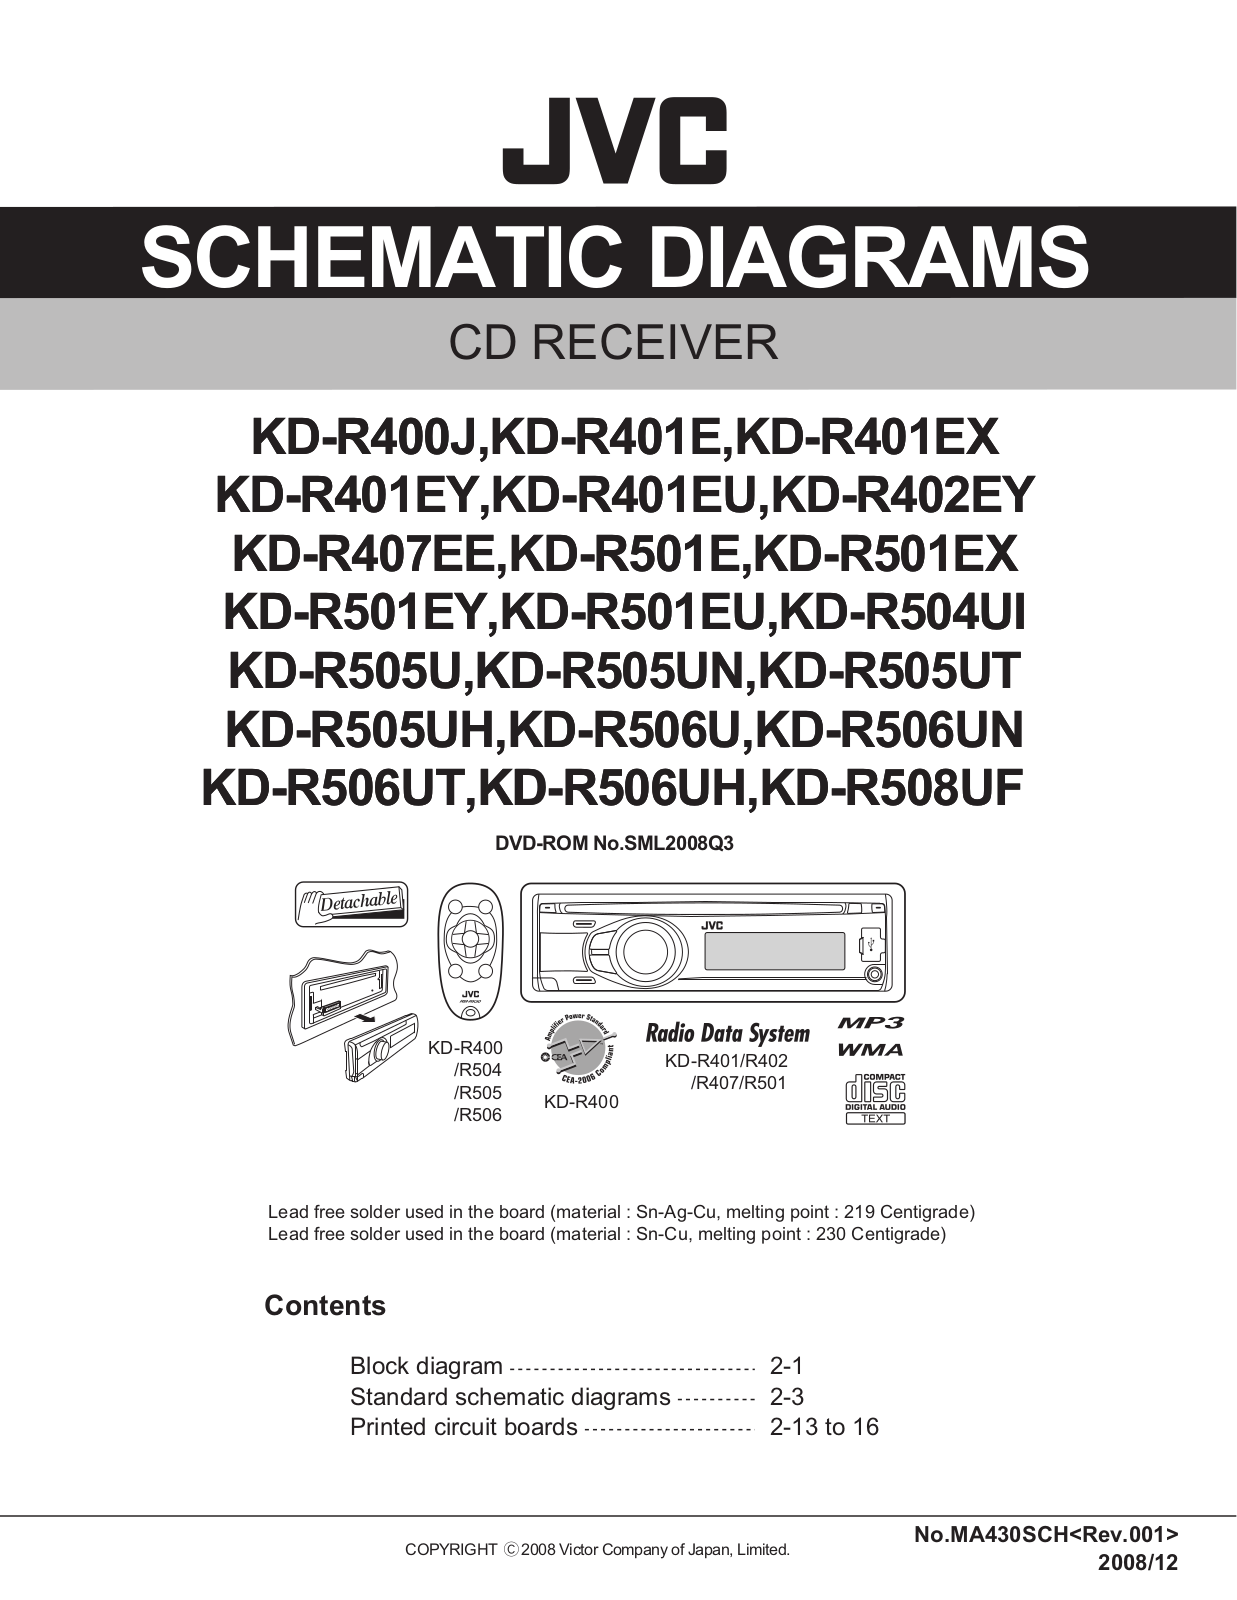 JVC KDR-401, KDR-402, KDR-407, KDR-501, KDR-504 Service manual